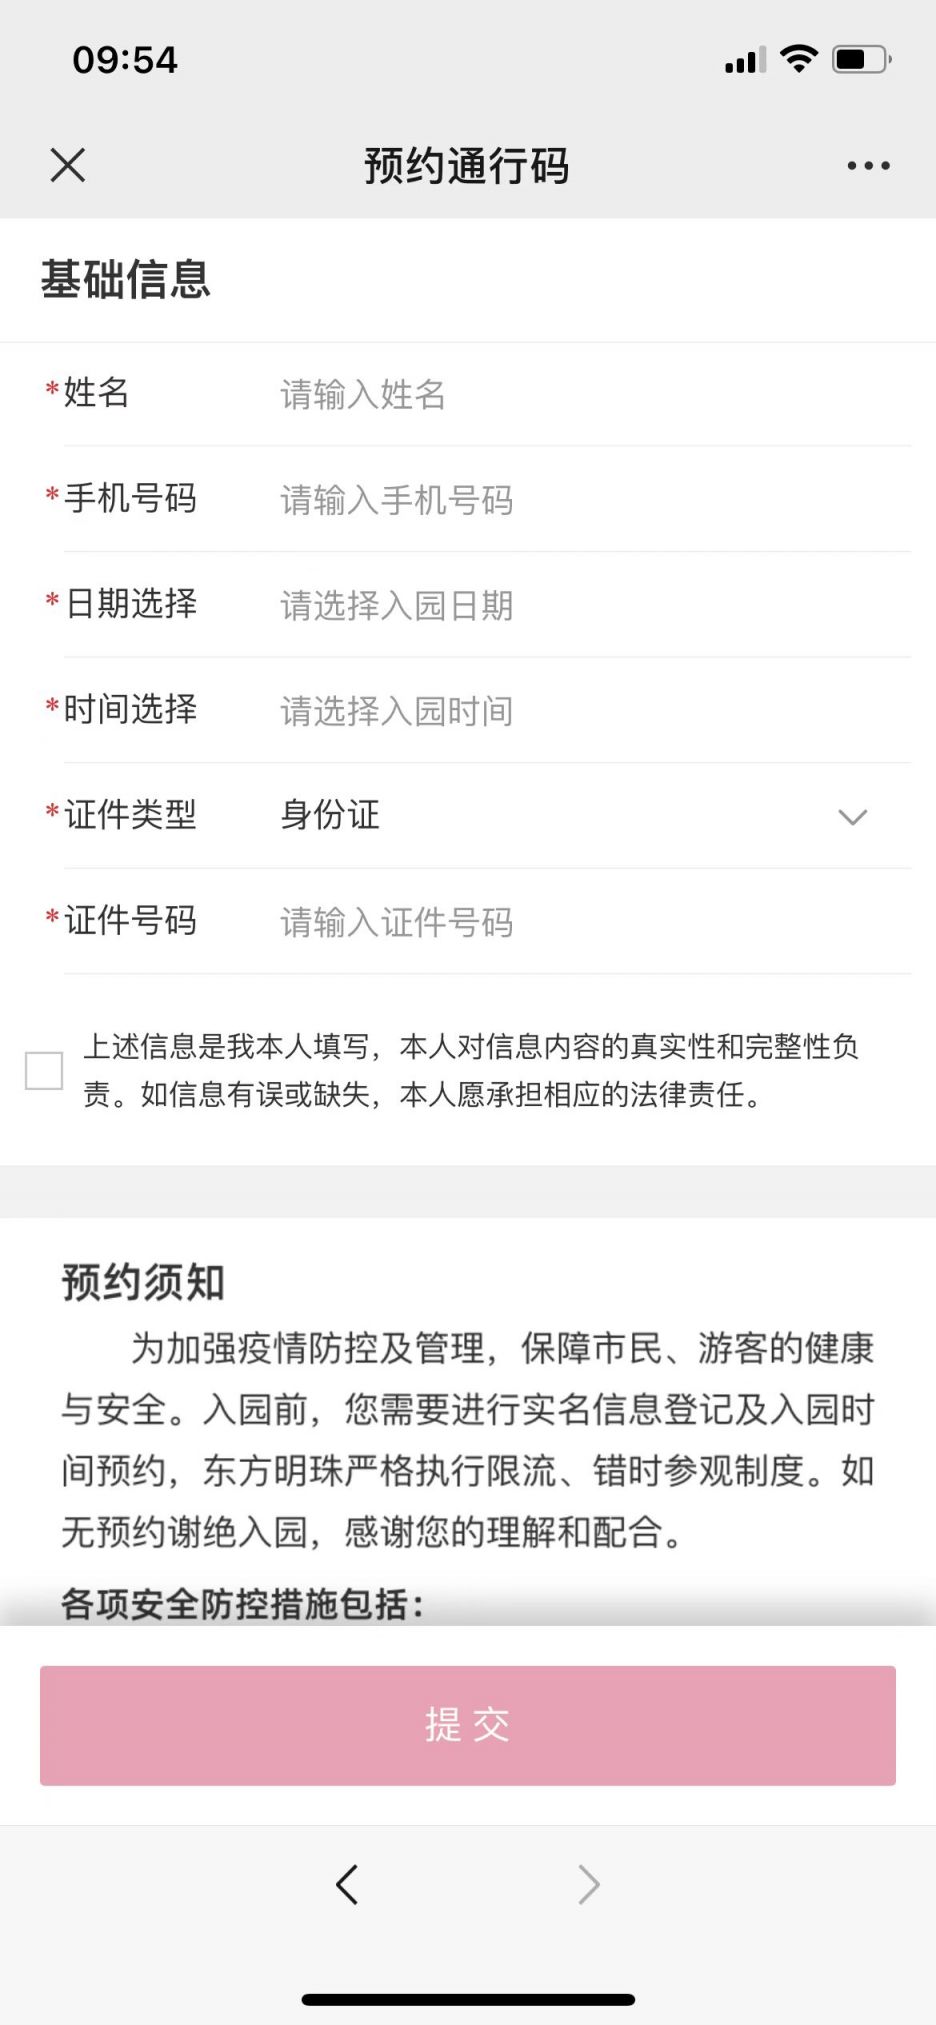 上海东方明珠门票预约官网入口及操作流程